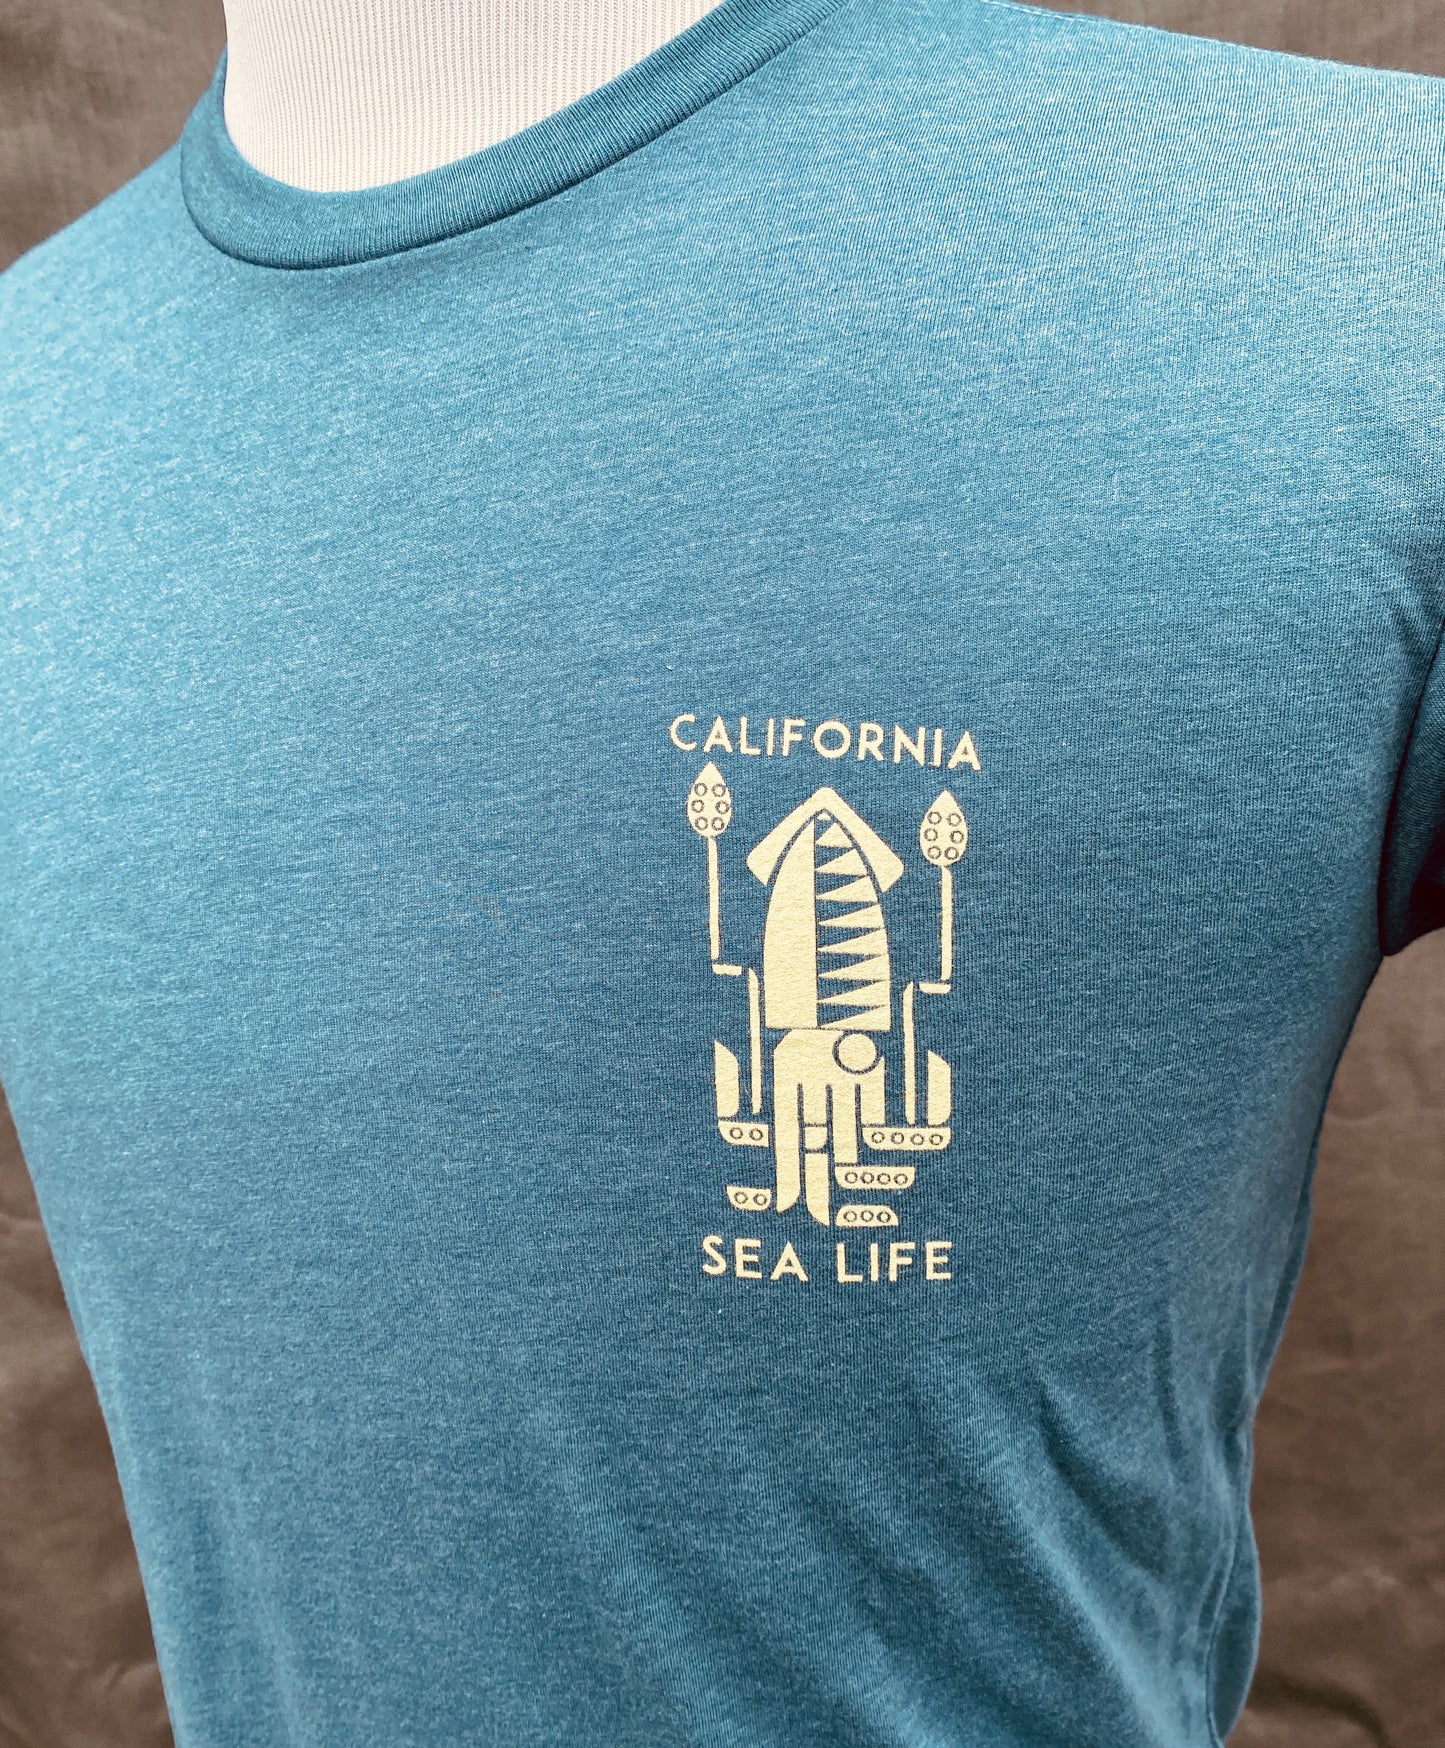 California Squid and Sealife